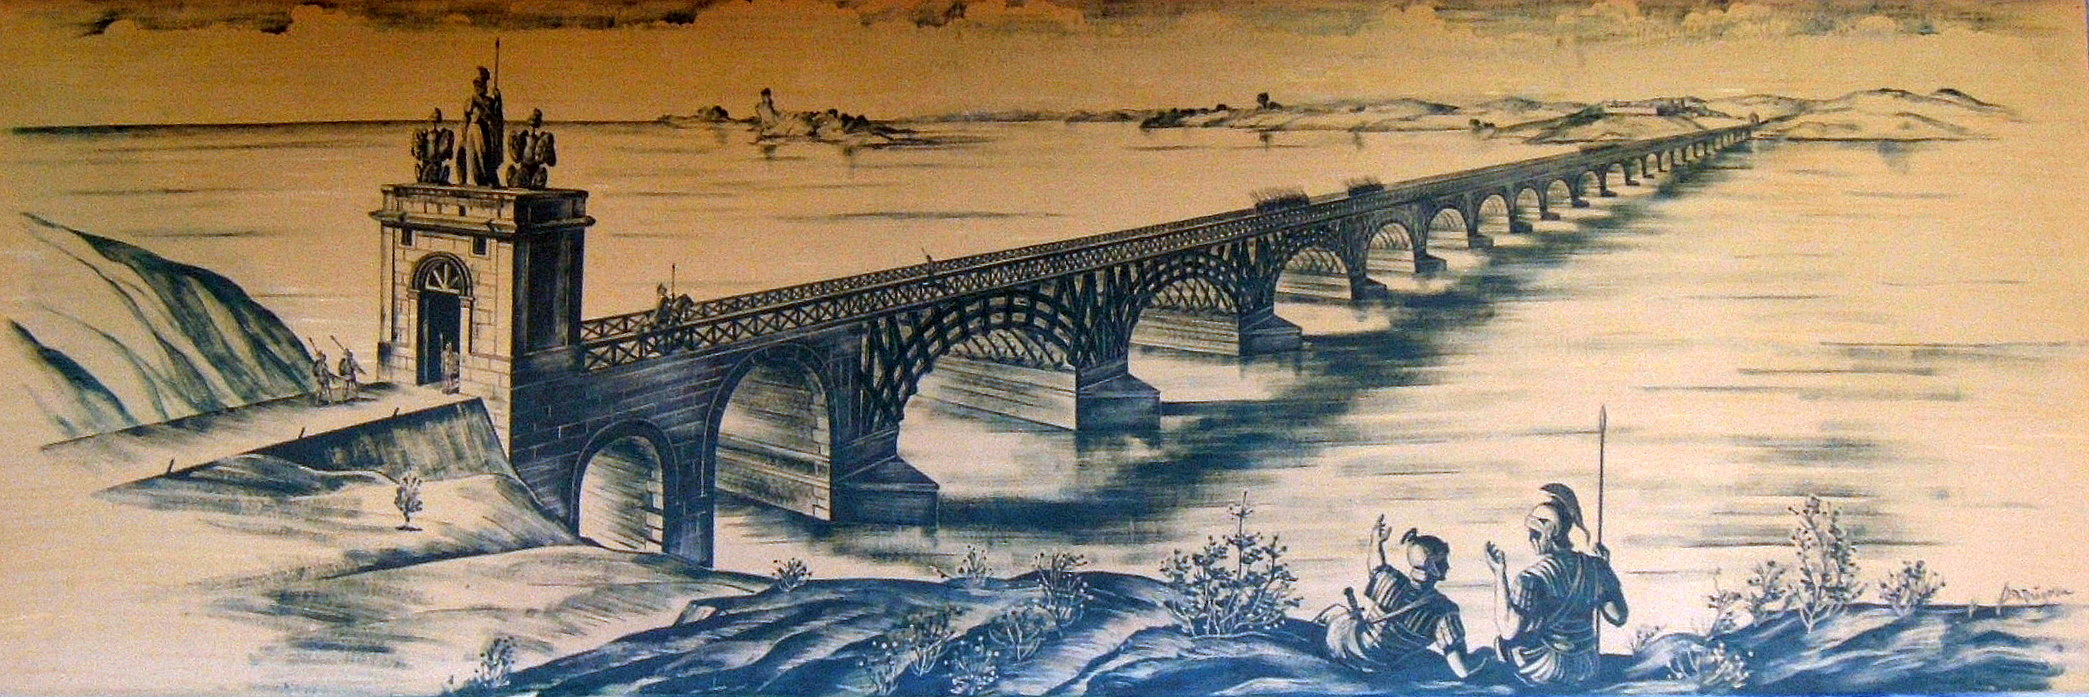 Puente de Trajano según una ilustración de E. Duperrex